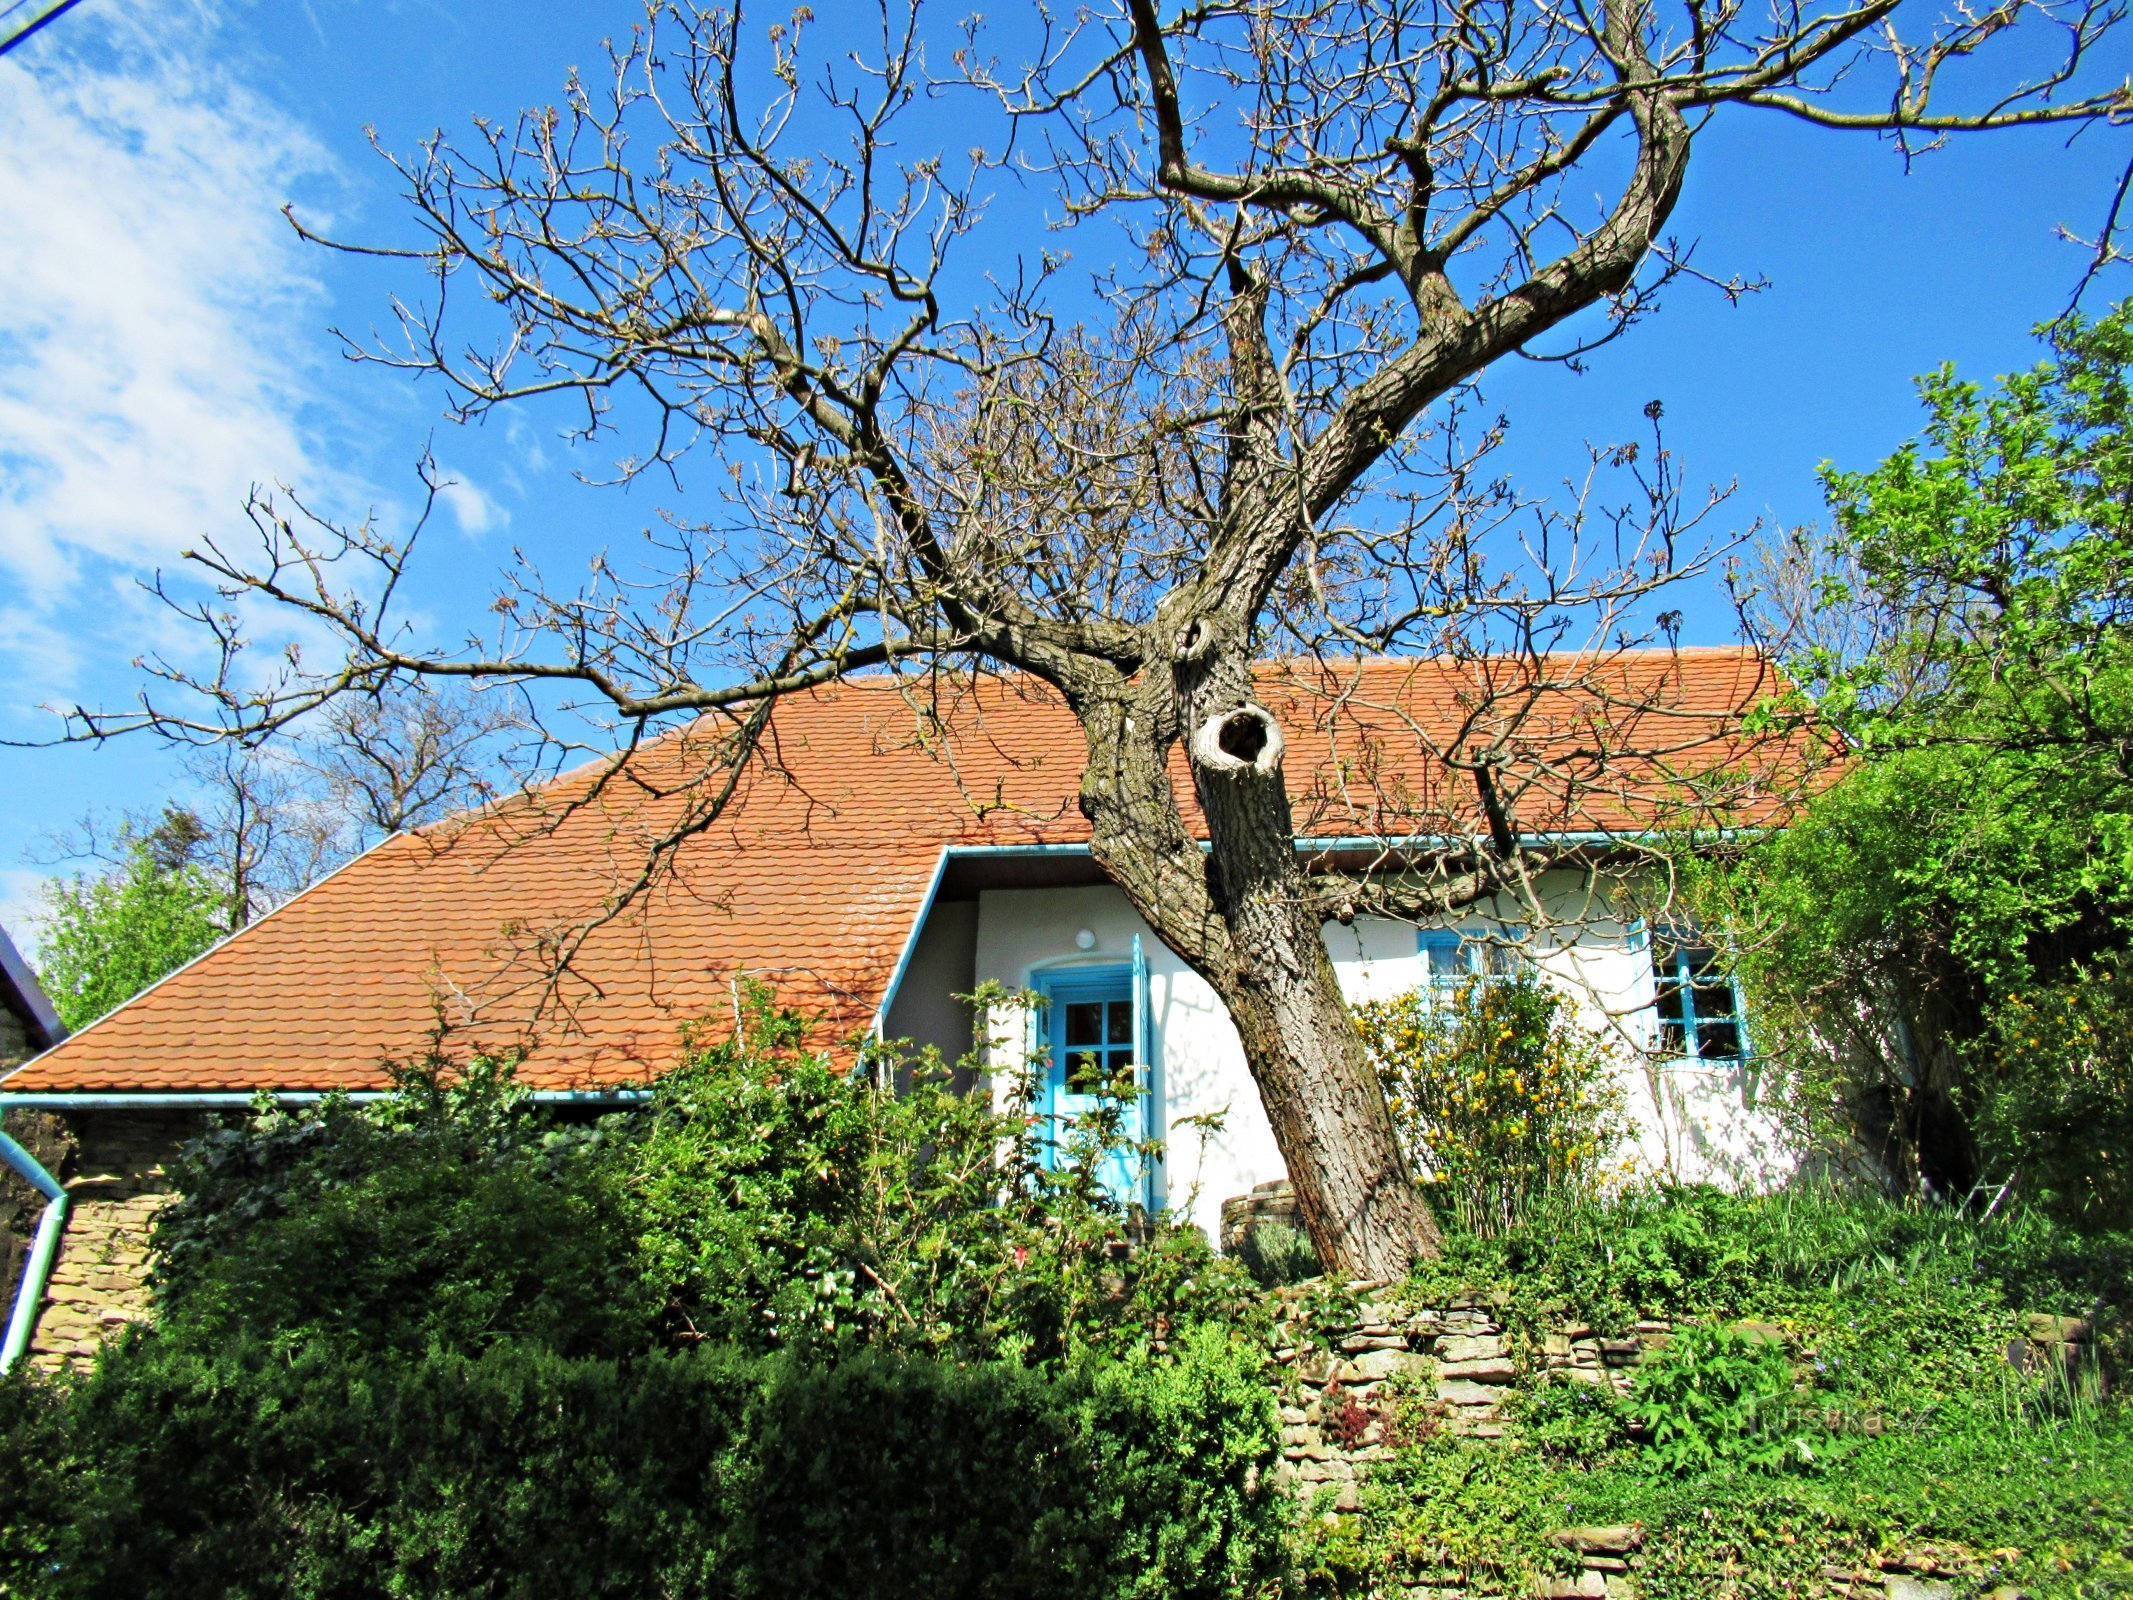 A aldeia de Javorník, casas pitorescas na área - Kopanky na aldeia de Javorník em Slovácko